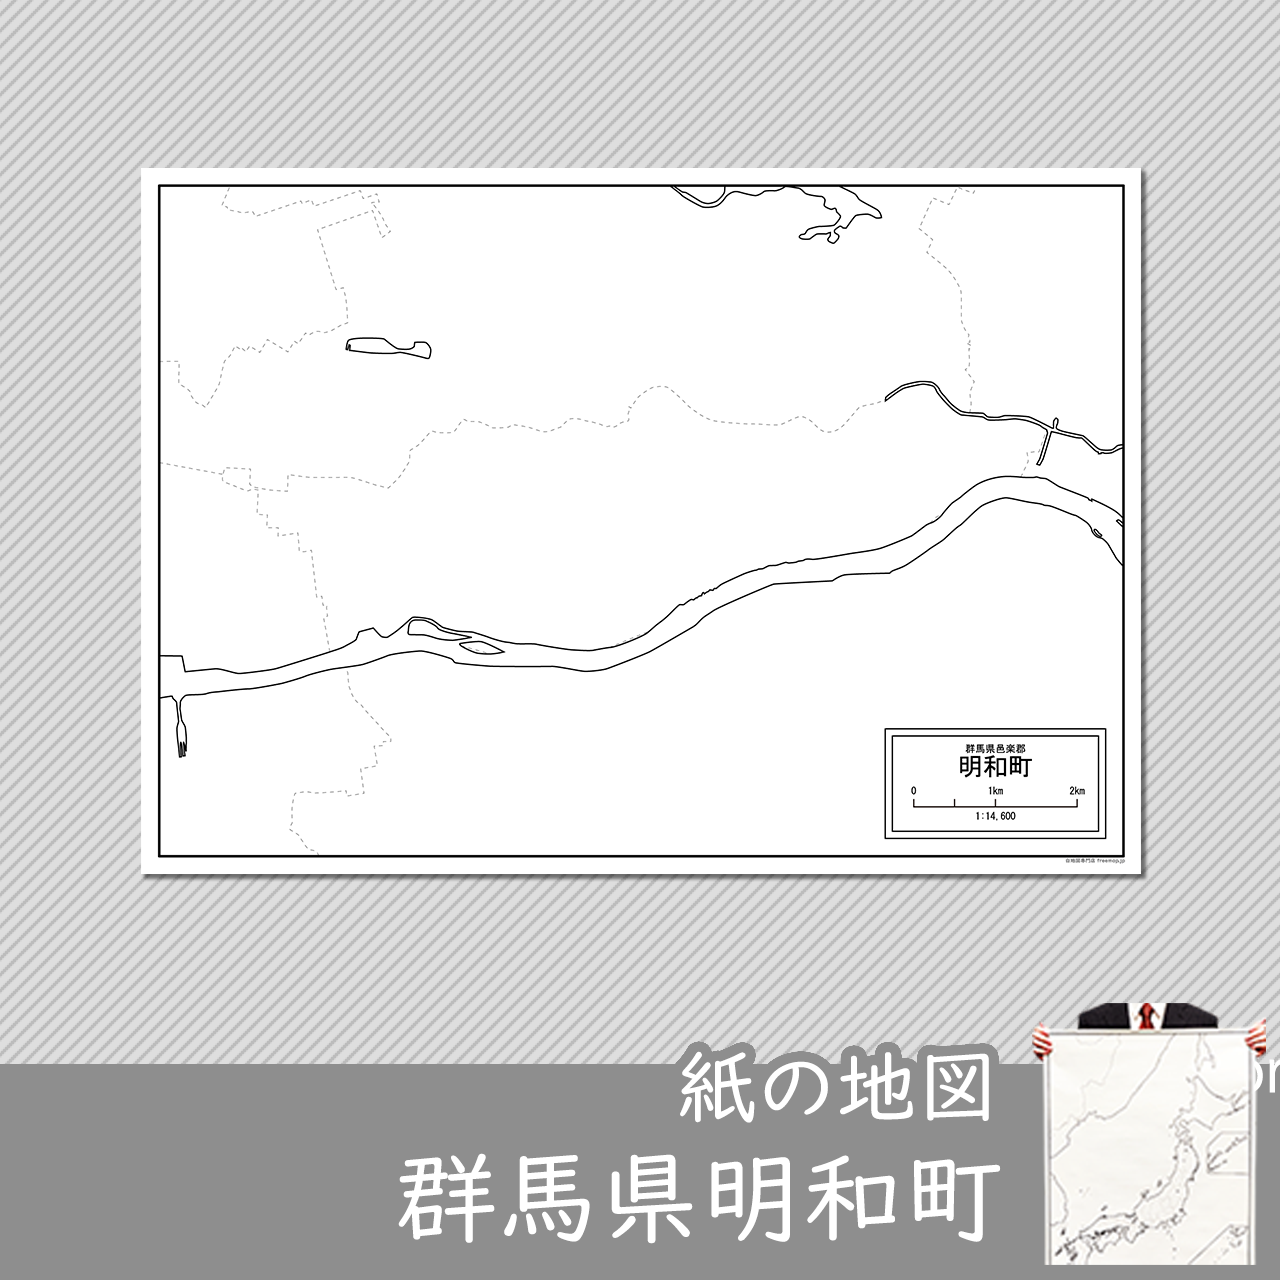 明和町の紙の白地図のサムネイル